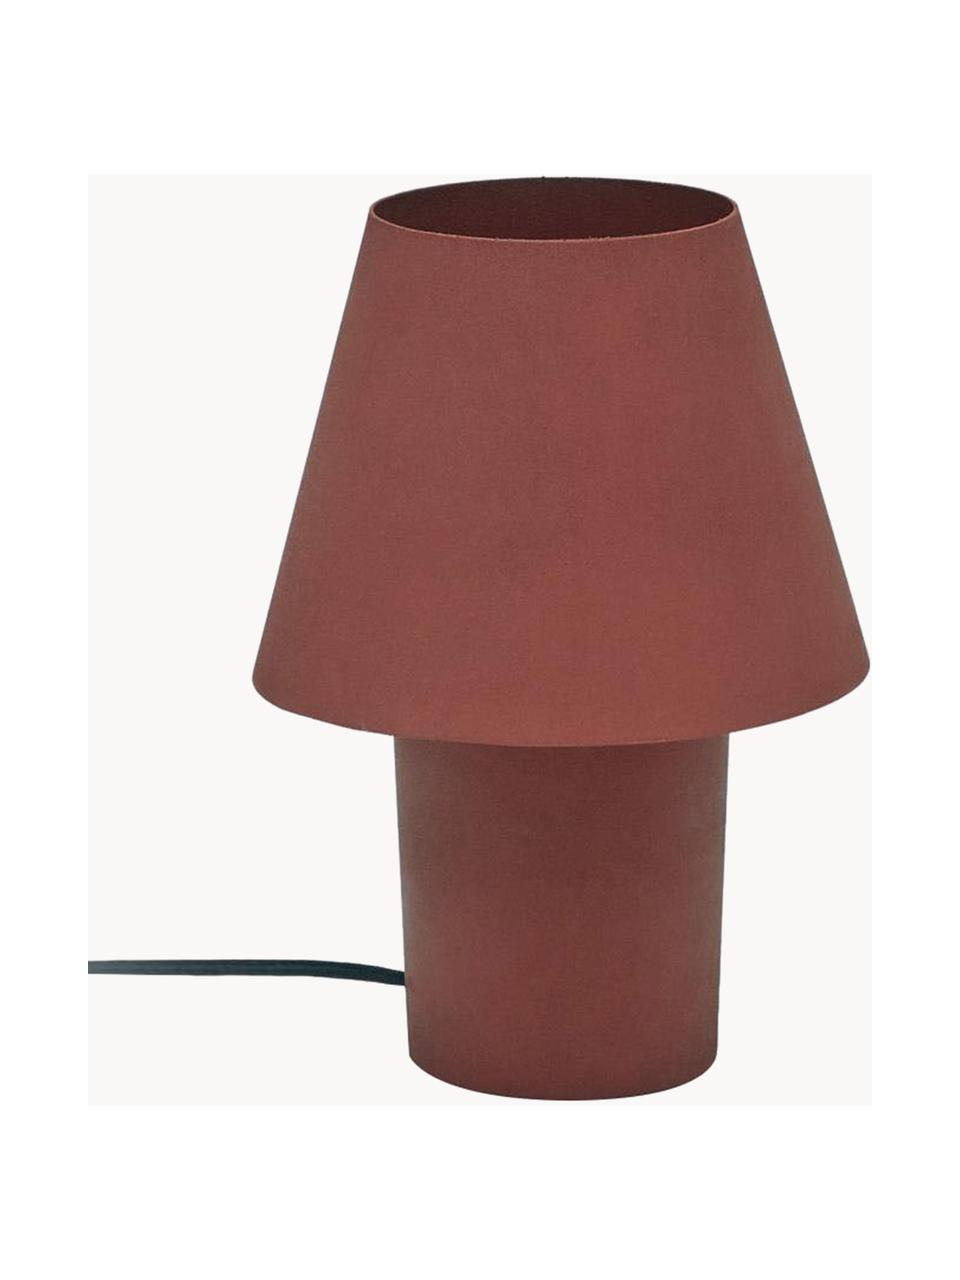 Lampa stołowa Canapost, Rdzawoczerwony, Ø 20 x W 30 cm